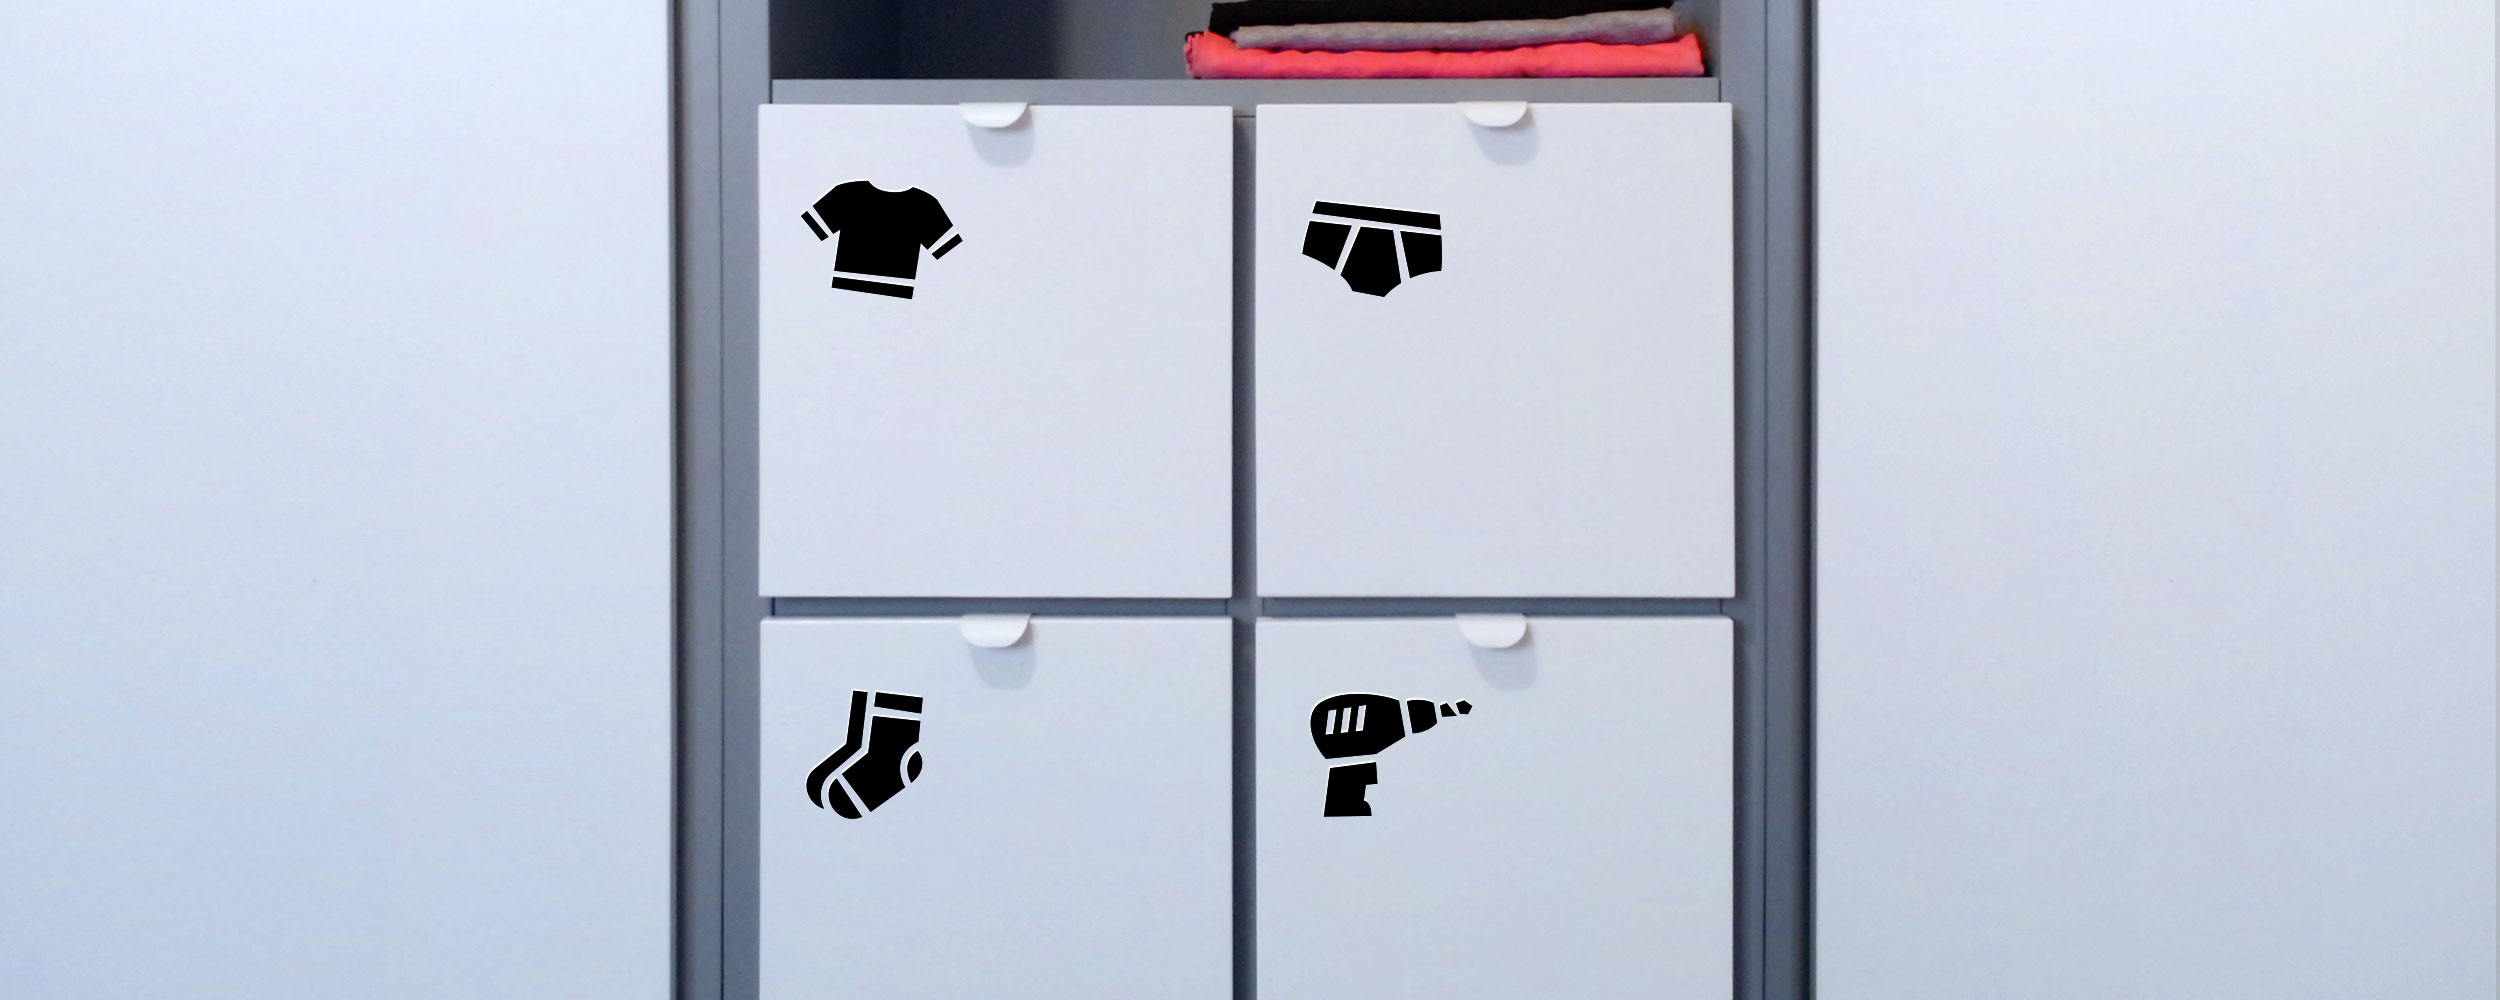 Шкаф с иконками одежды на ящиках